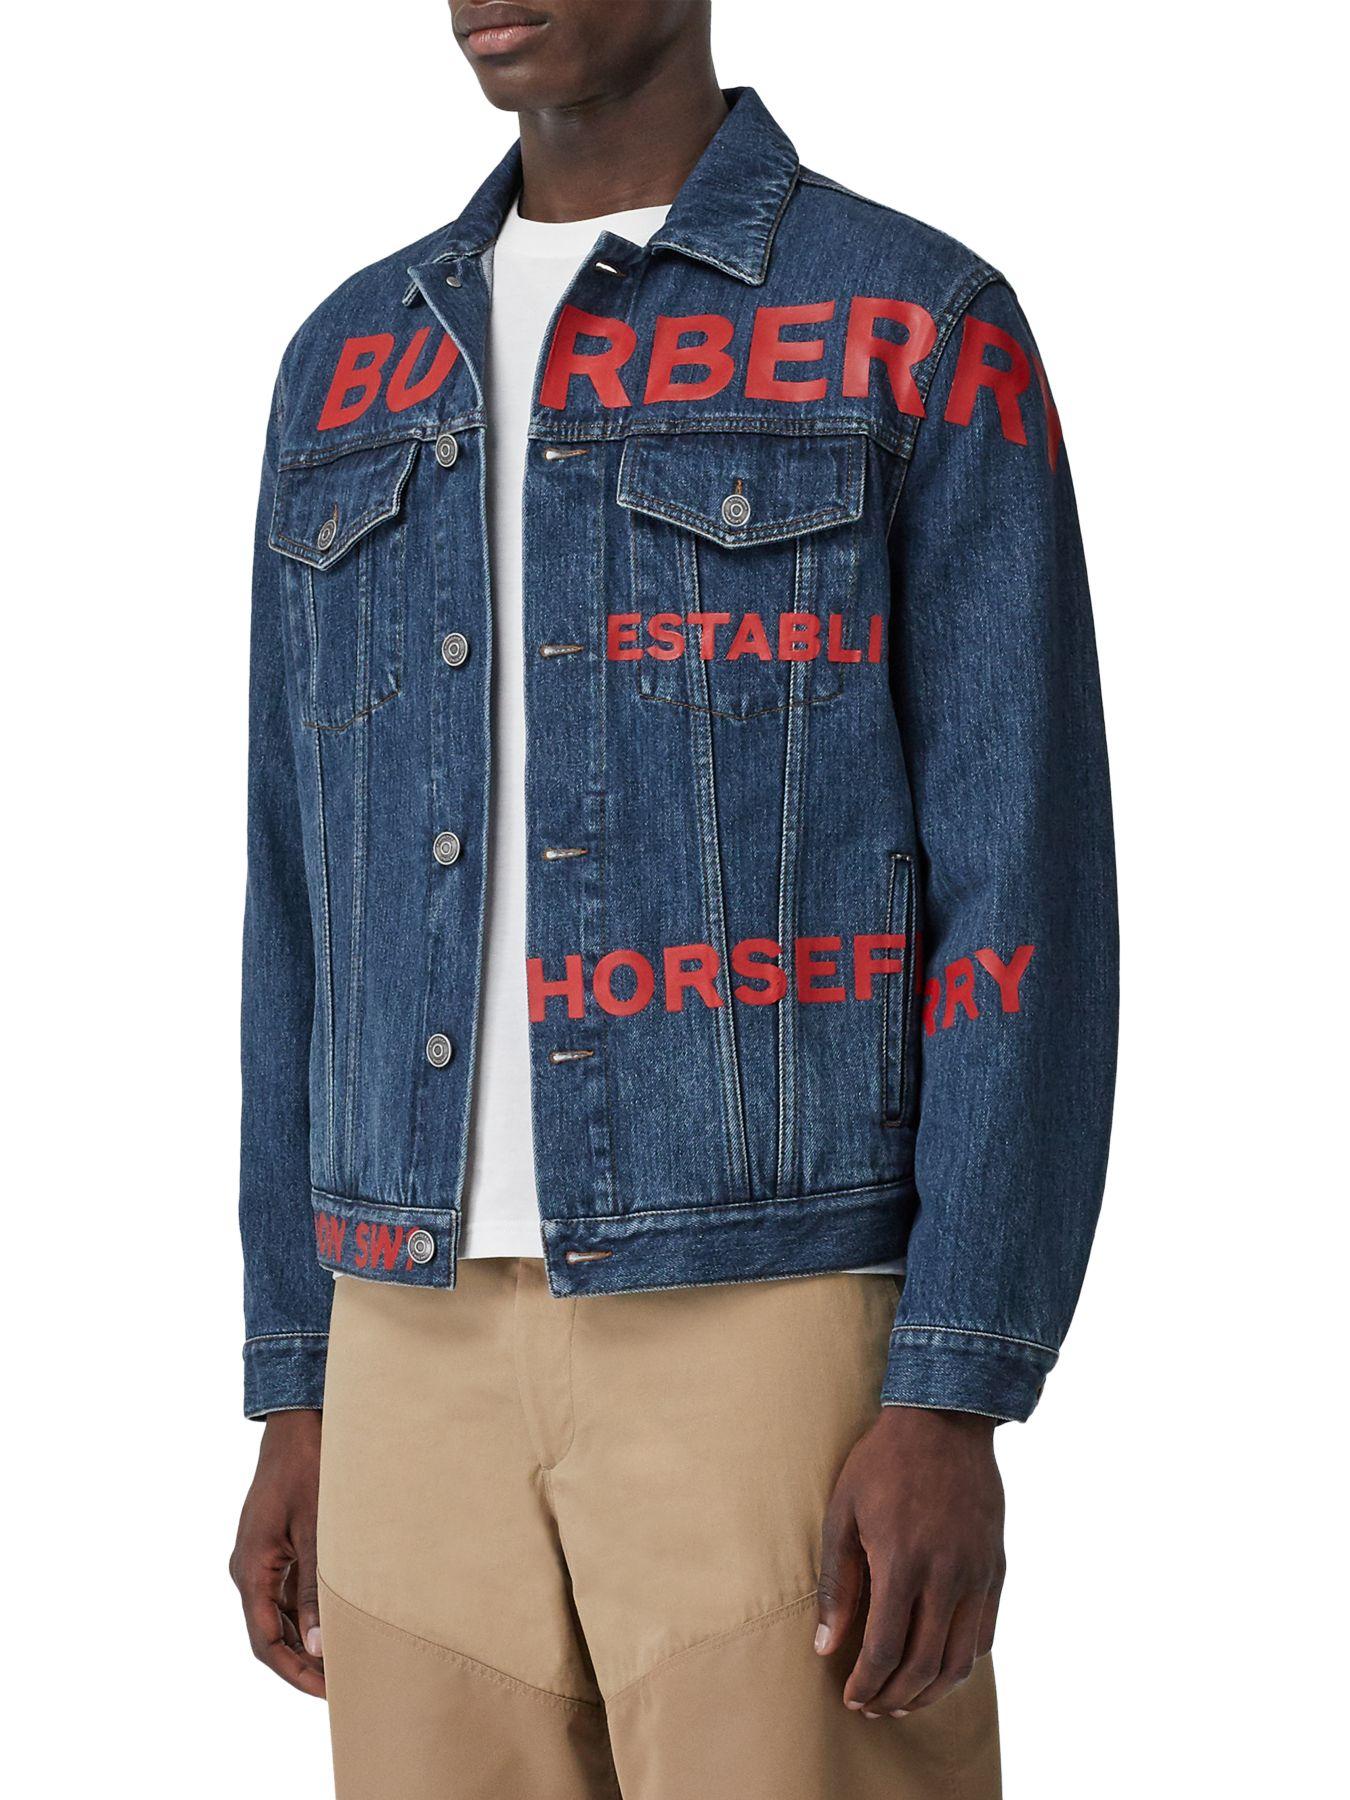 Actualizar 35+ imagen burberry jean jacket mens